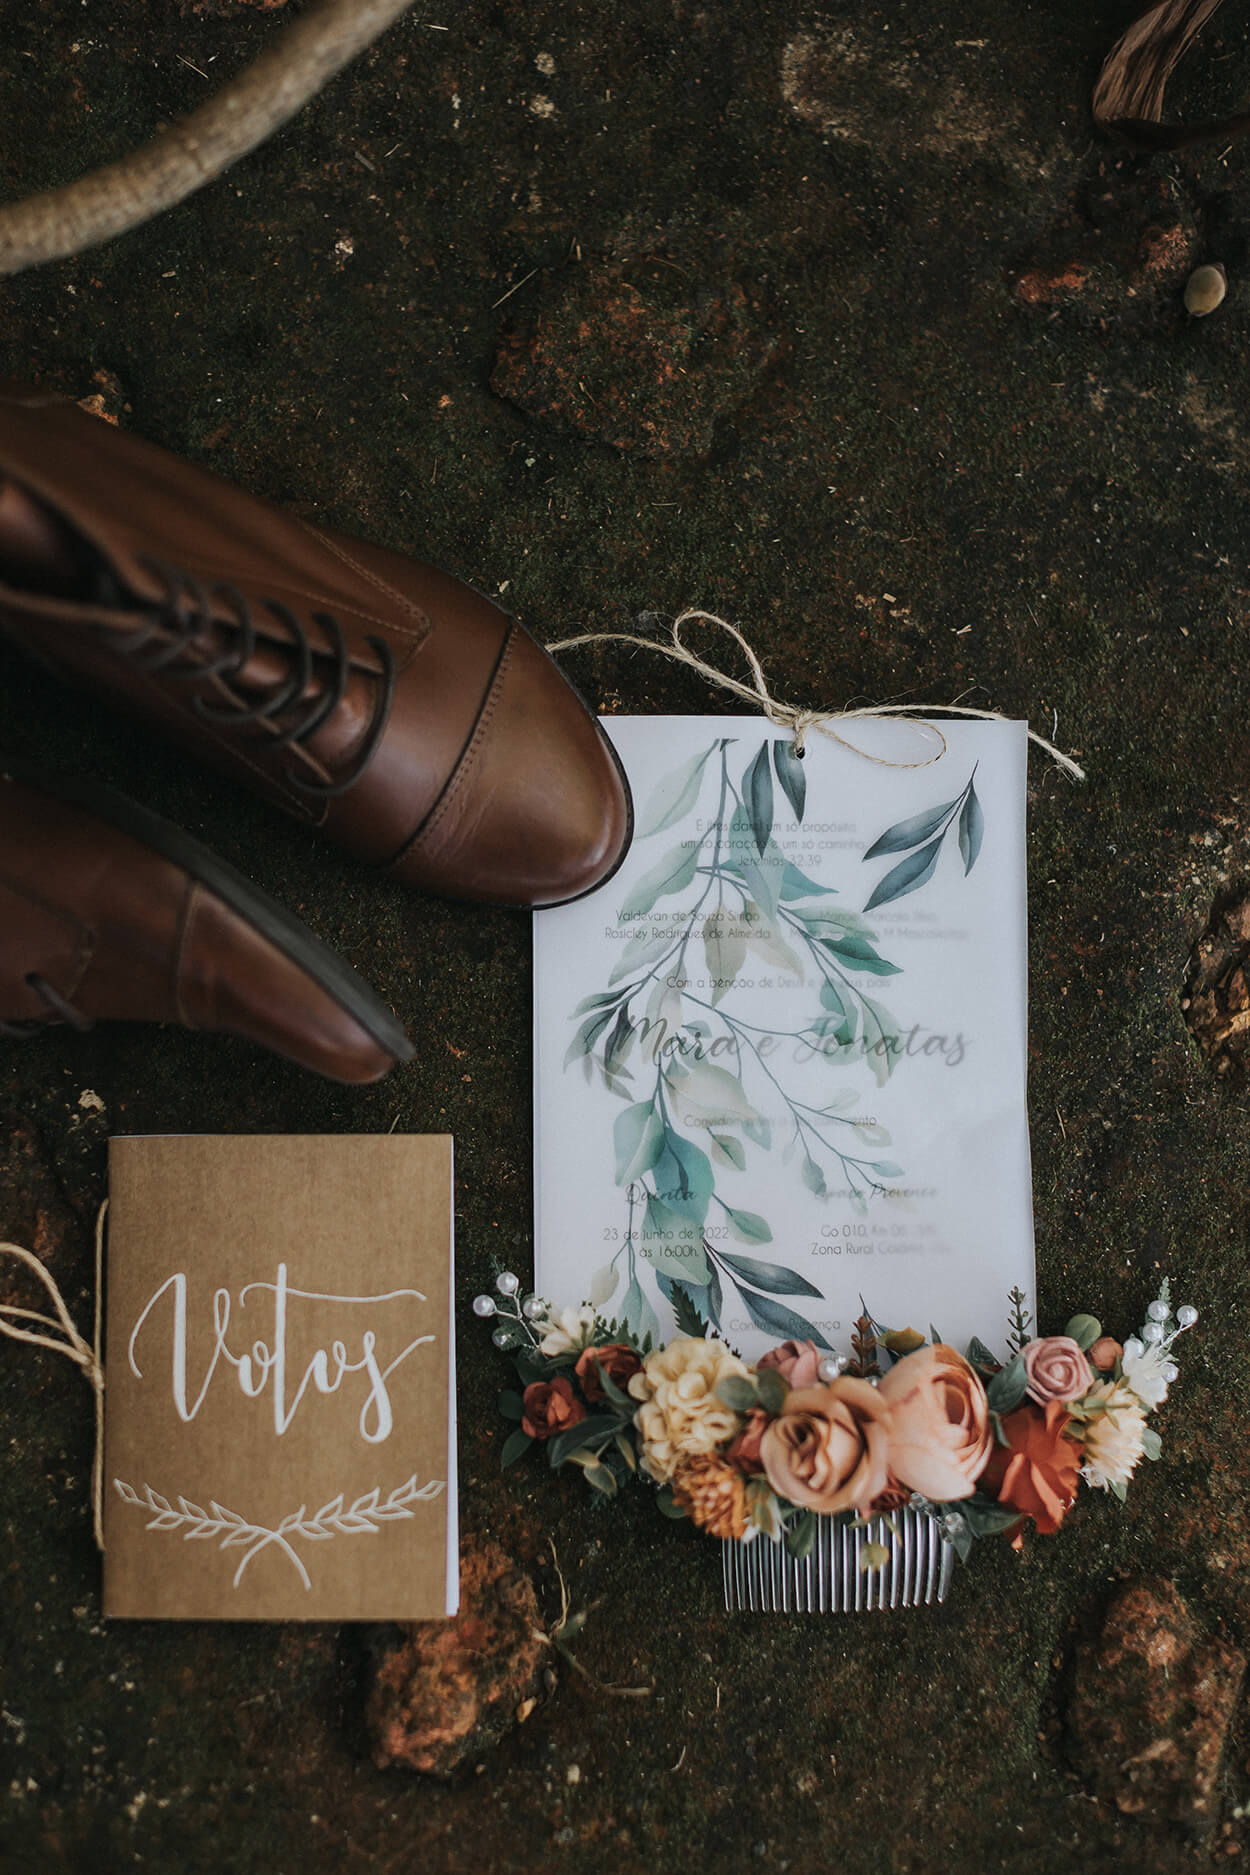 Bota marrom, caderno de votos com papel craft e letra delicada, pente para cabelo com flores decorativas e convite de casamento branco e azul com folhas